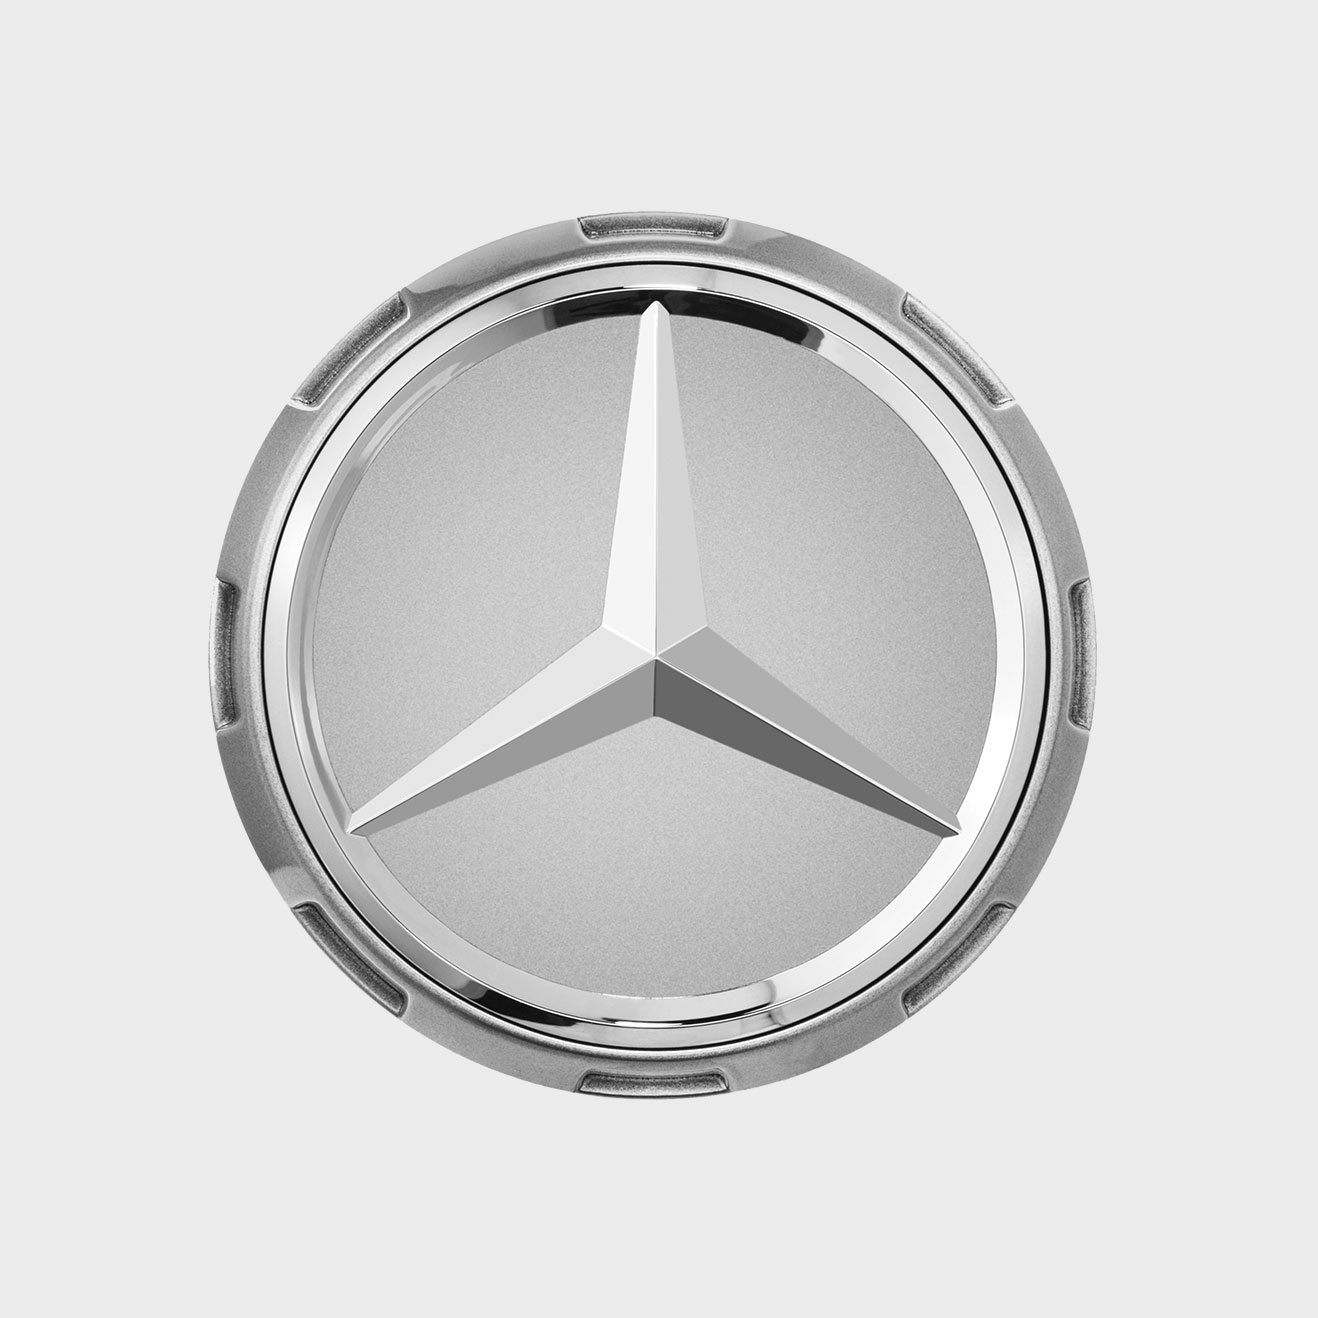 Mercedes-Benz AMG Radnabenabdeckung, Zentralverschlussdesign, silber